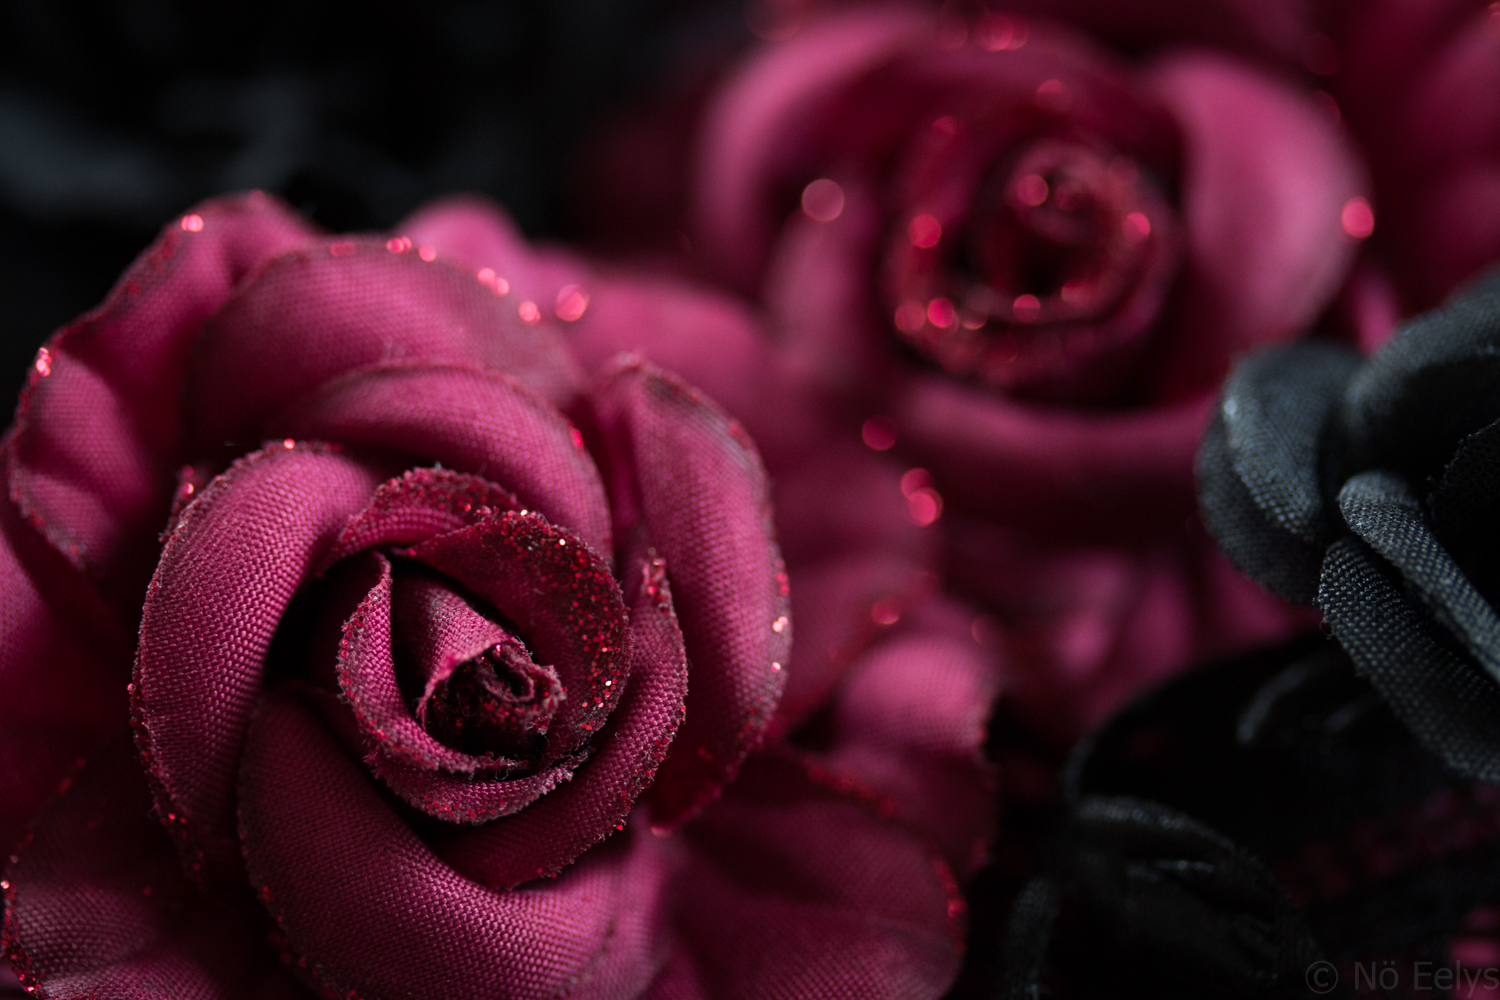 Roses Rouges par No Eelys, auteure du Boudoir de Nö